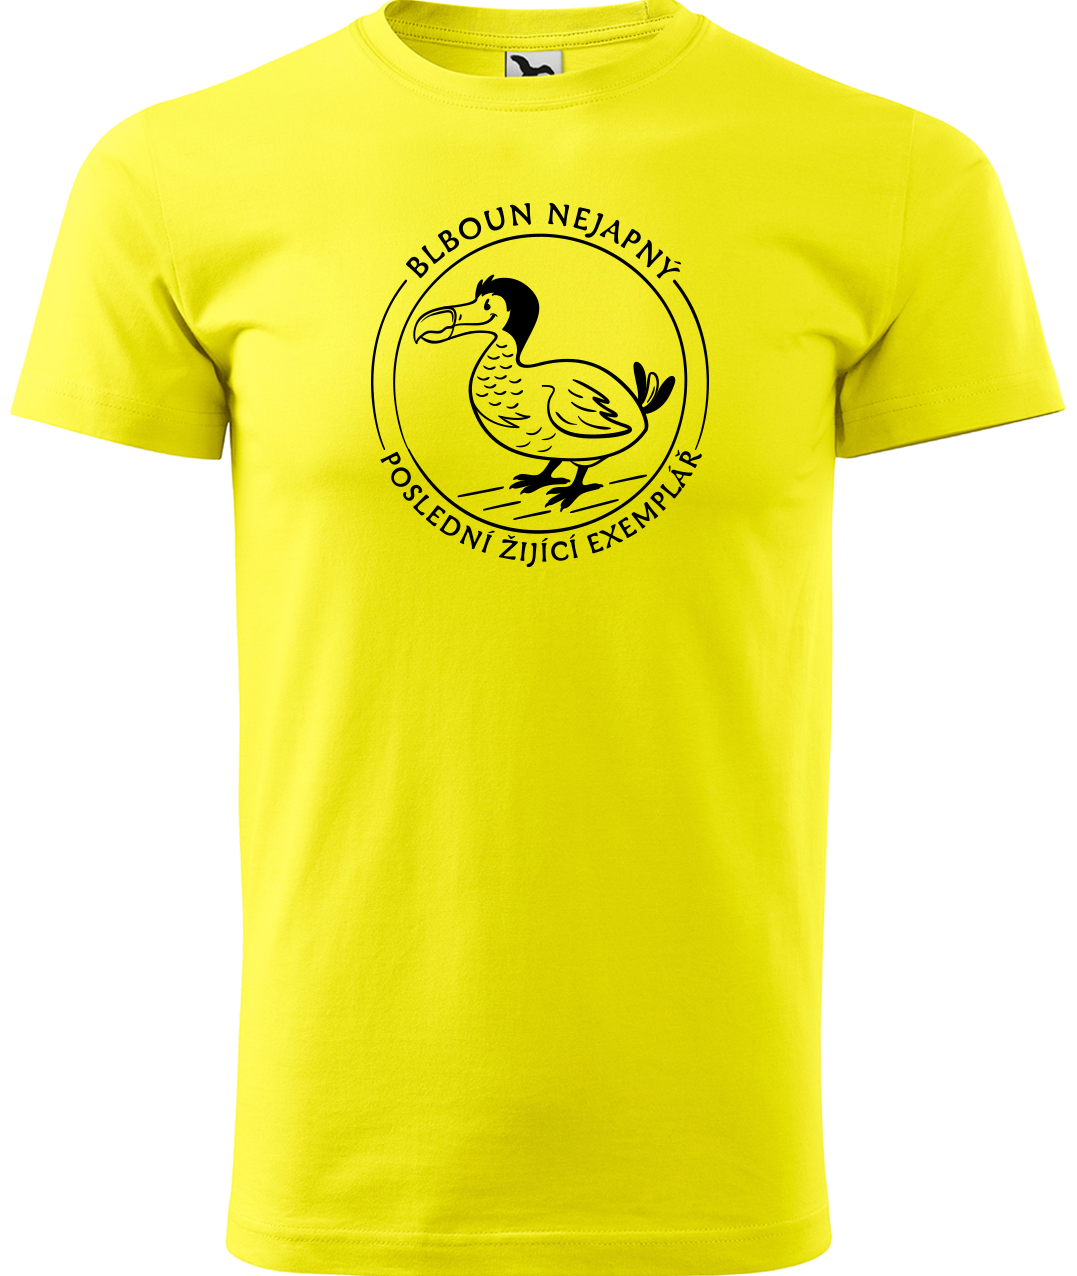 Vtipné tričko - Blboun nejapný Velikost: L, Barva: Žlutá (04)